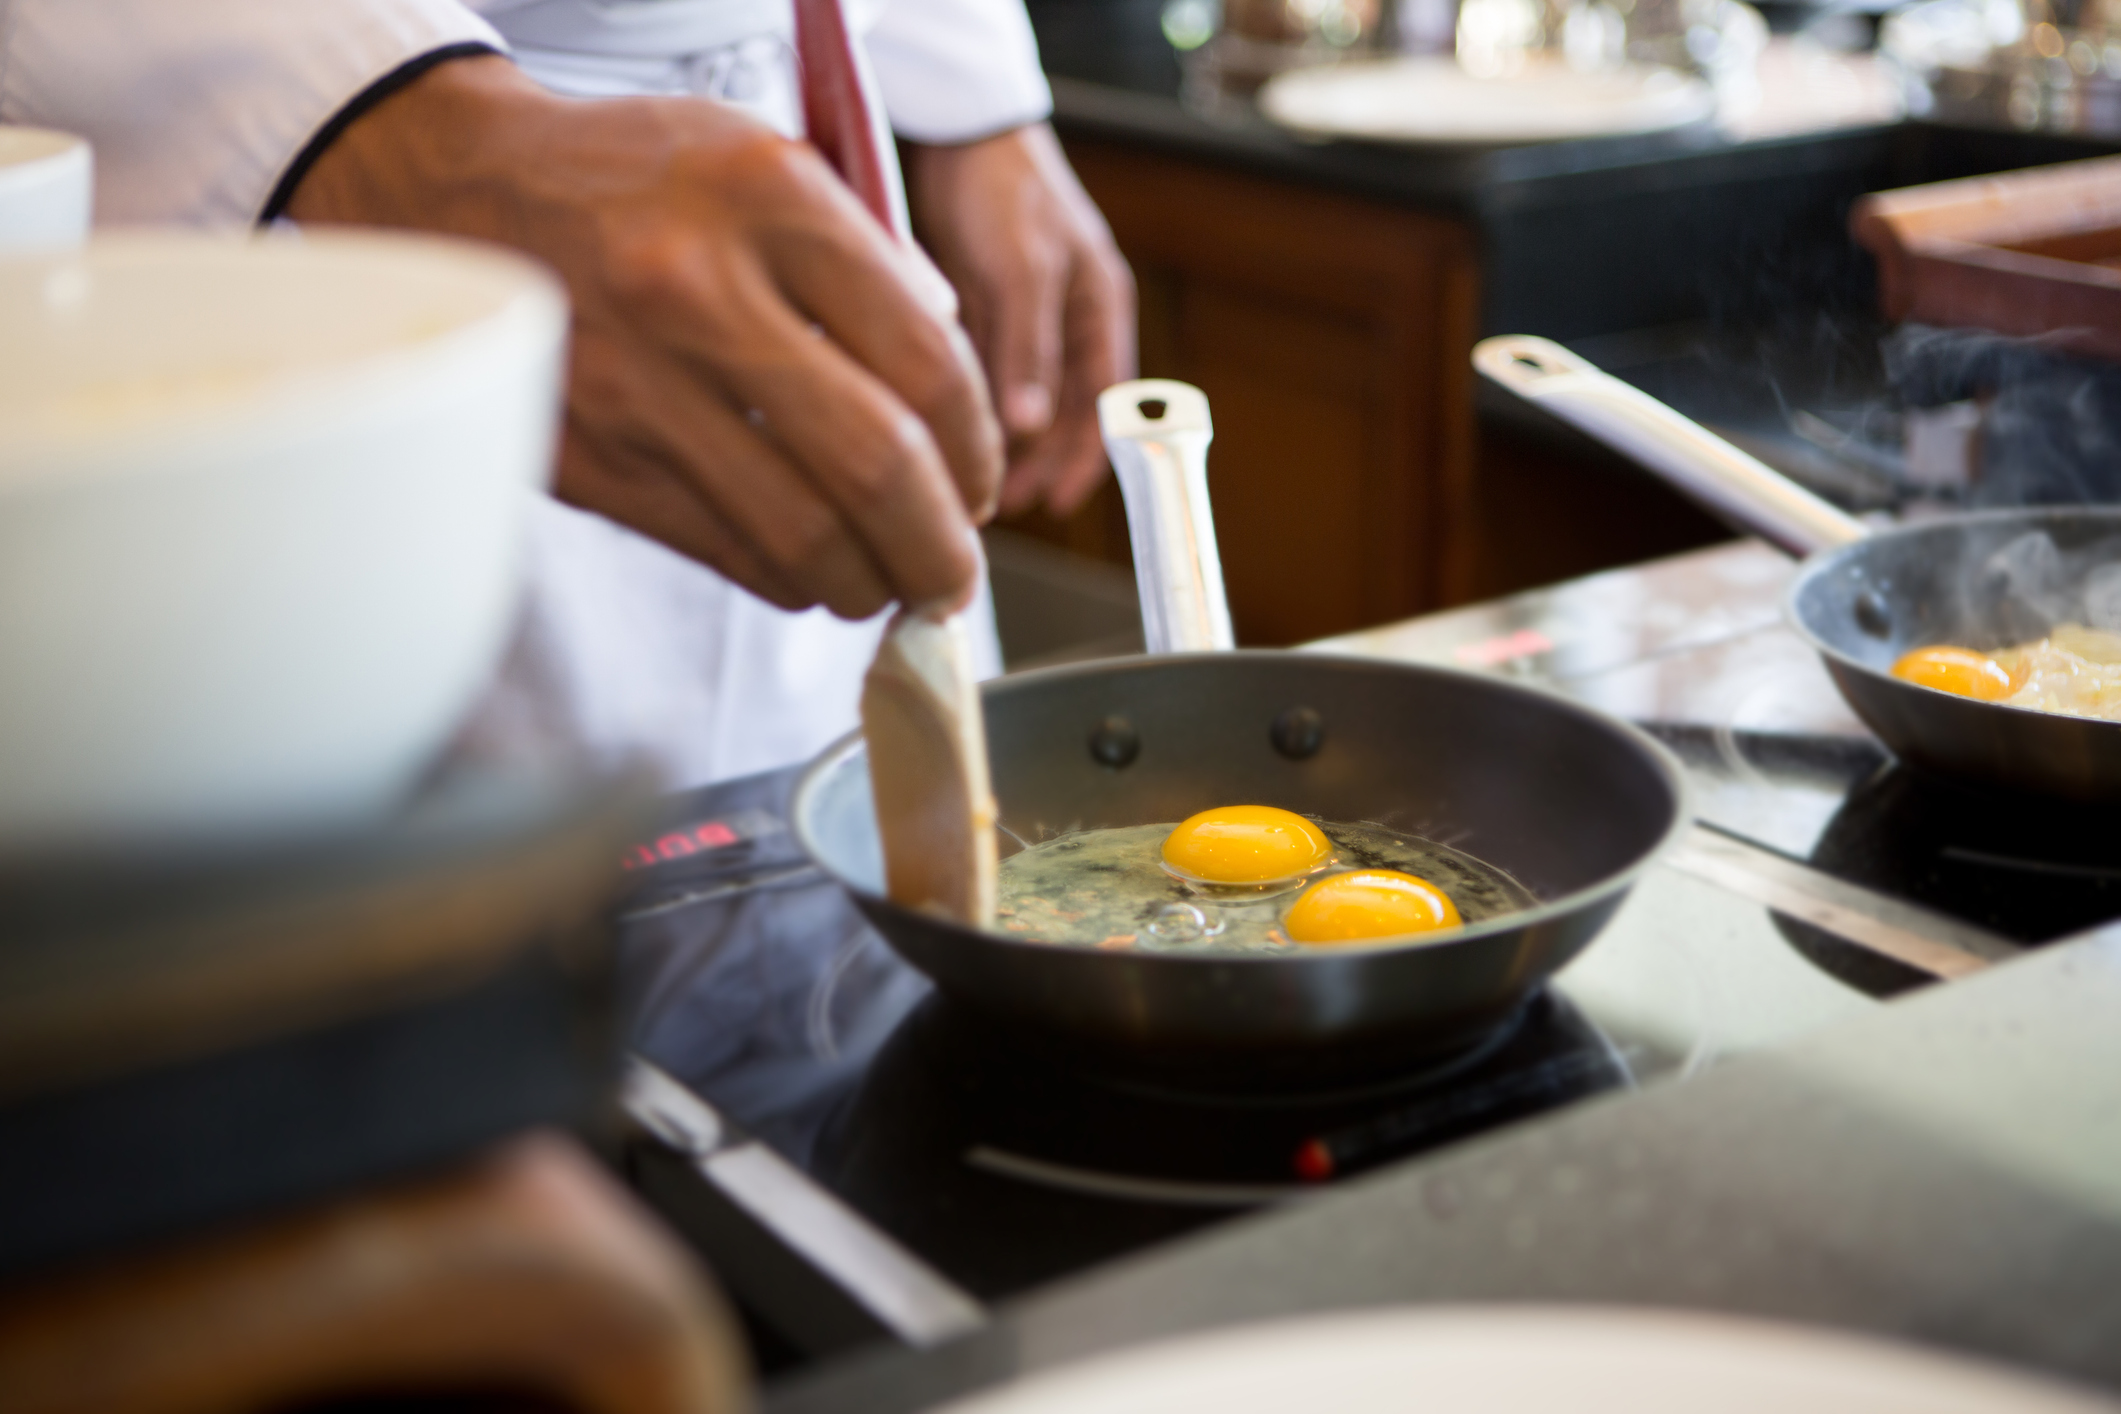 Cómo preparar un huevo frito sin que el aceite salpique; evite sufrir alguna quemadura o causar desastres en la cocina con este truco fácil e inmediato.